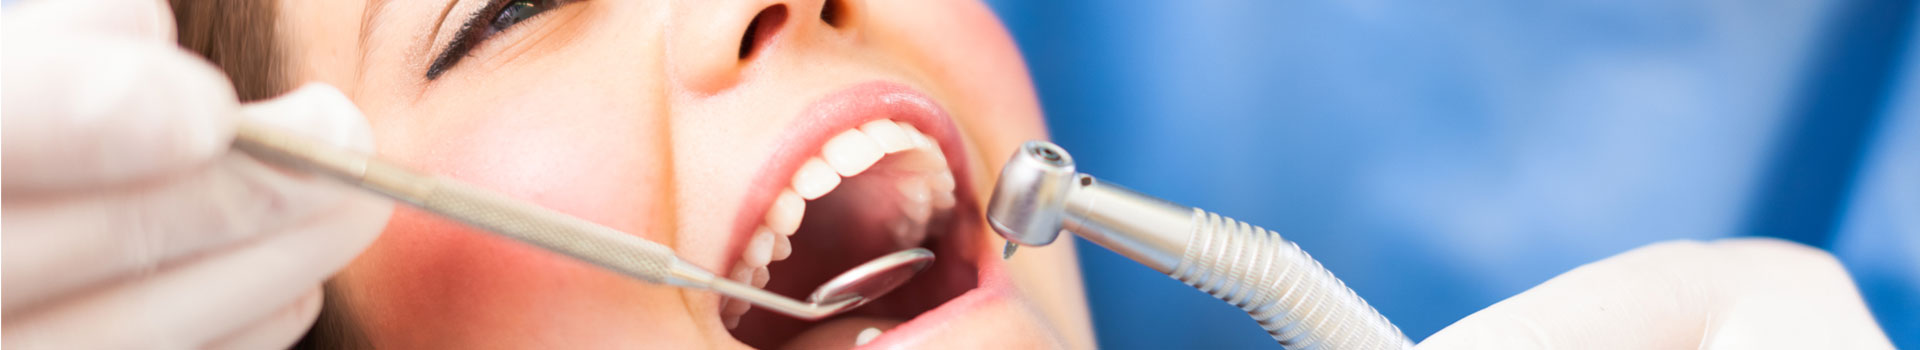 Dentist examining patient teeth